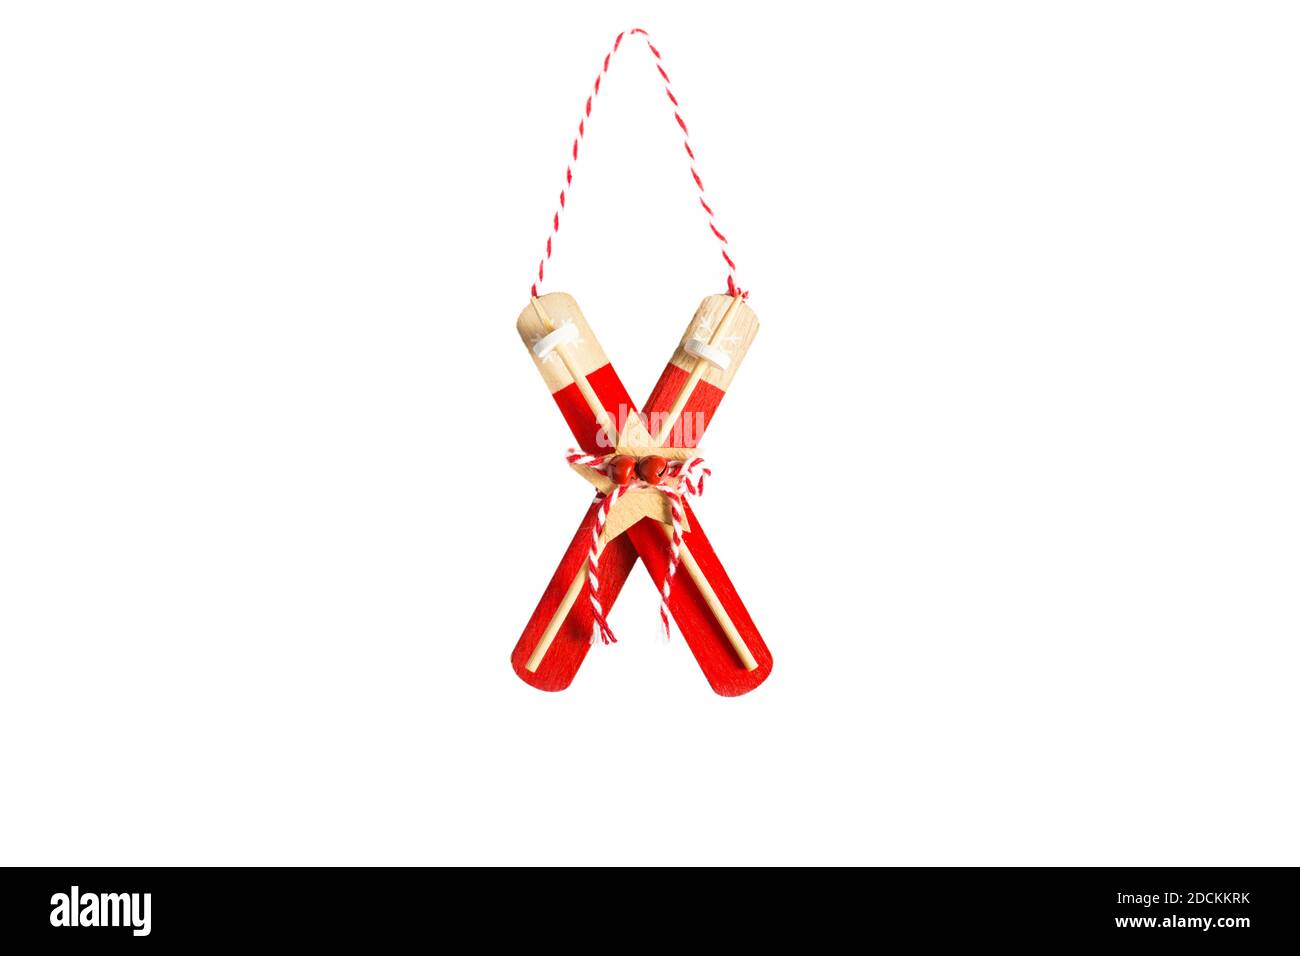 Rote Weihnachtsbaum Spielzeug-Holzskier mit Stöcken, Glocken und gestreiftem Seil auf weißem Hintergrund, isolieren. Neujahr, Weihnachten, Dekor zum Thema Wint Stockfoto